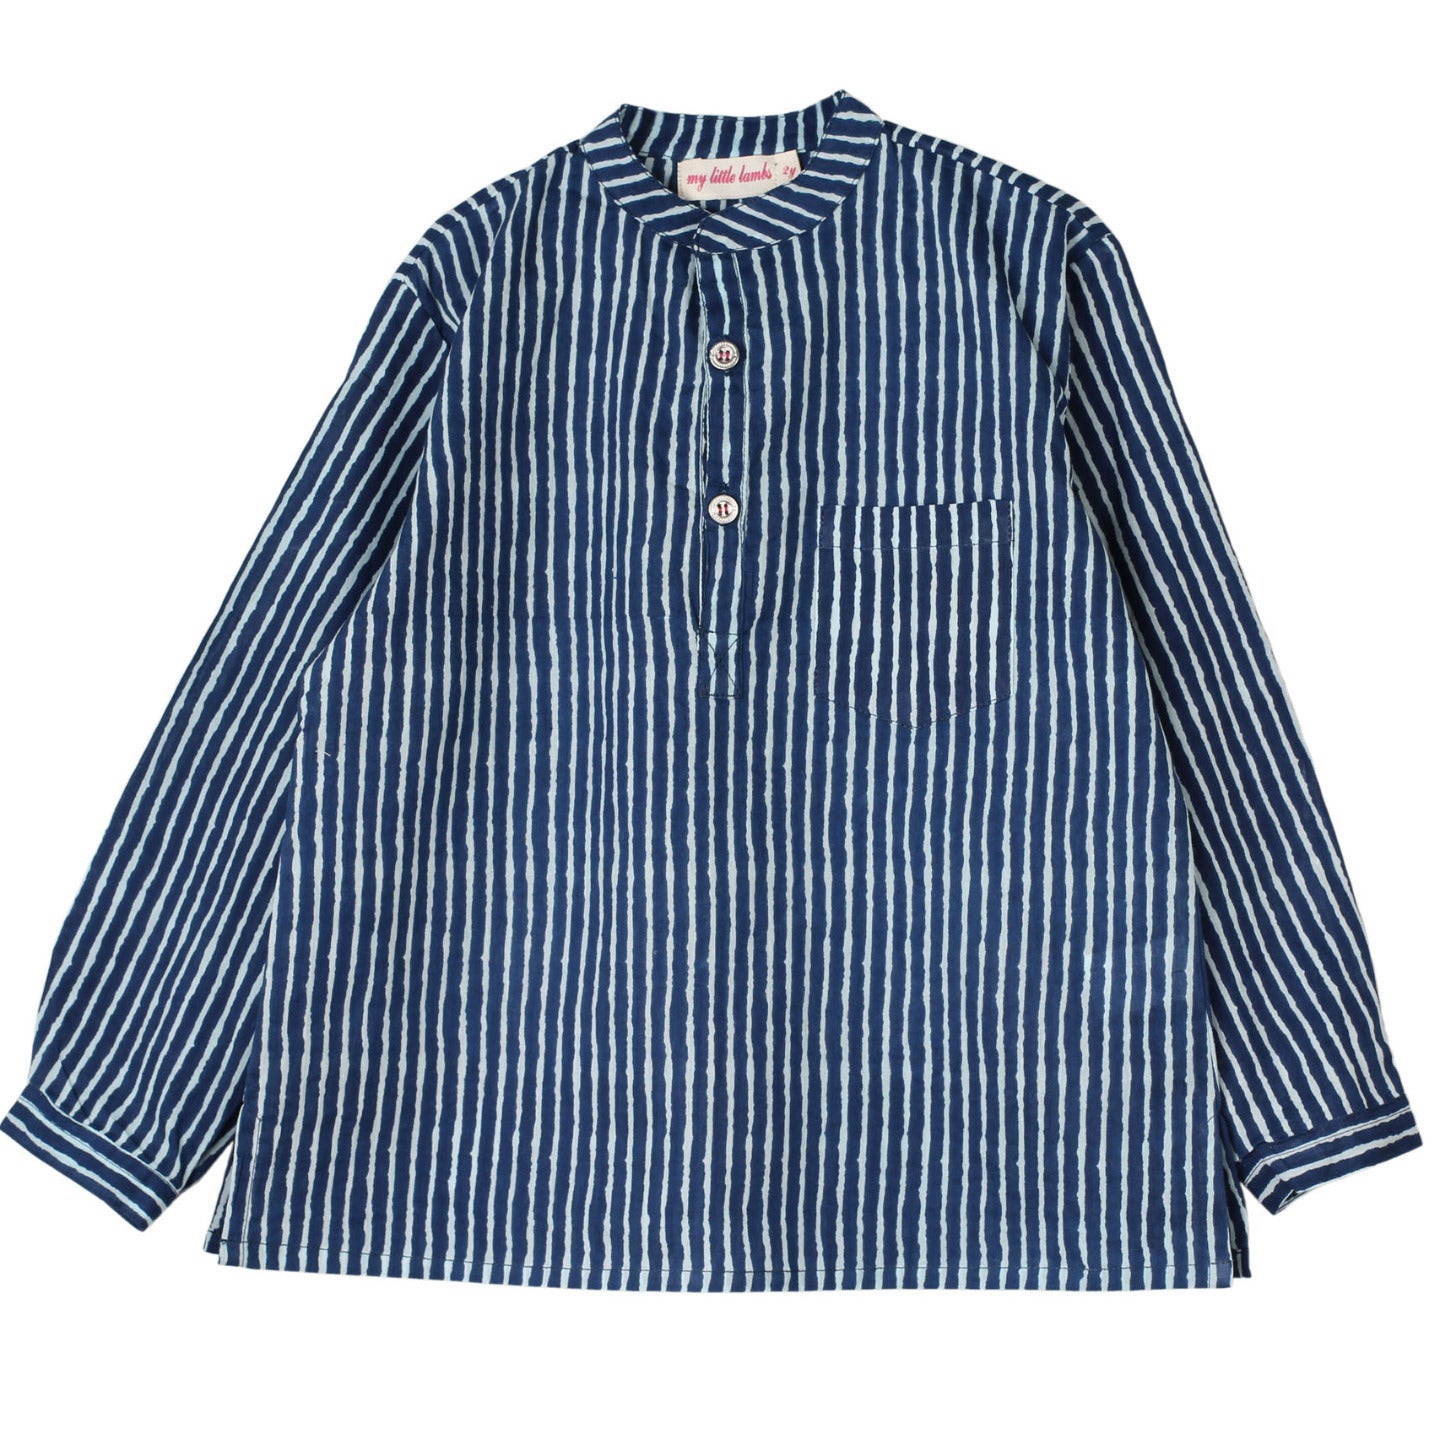 Indigo Striped Kurta Pyjama Set